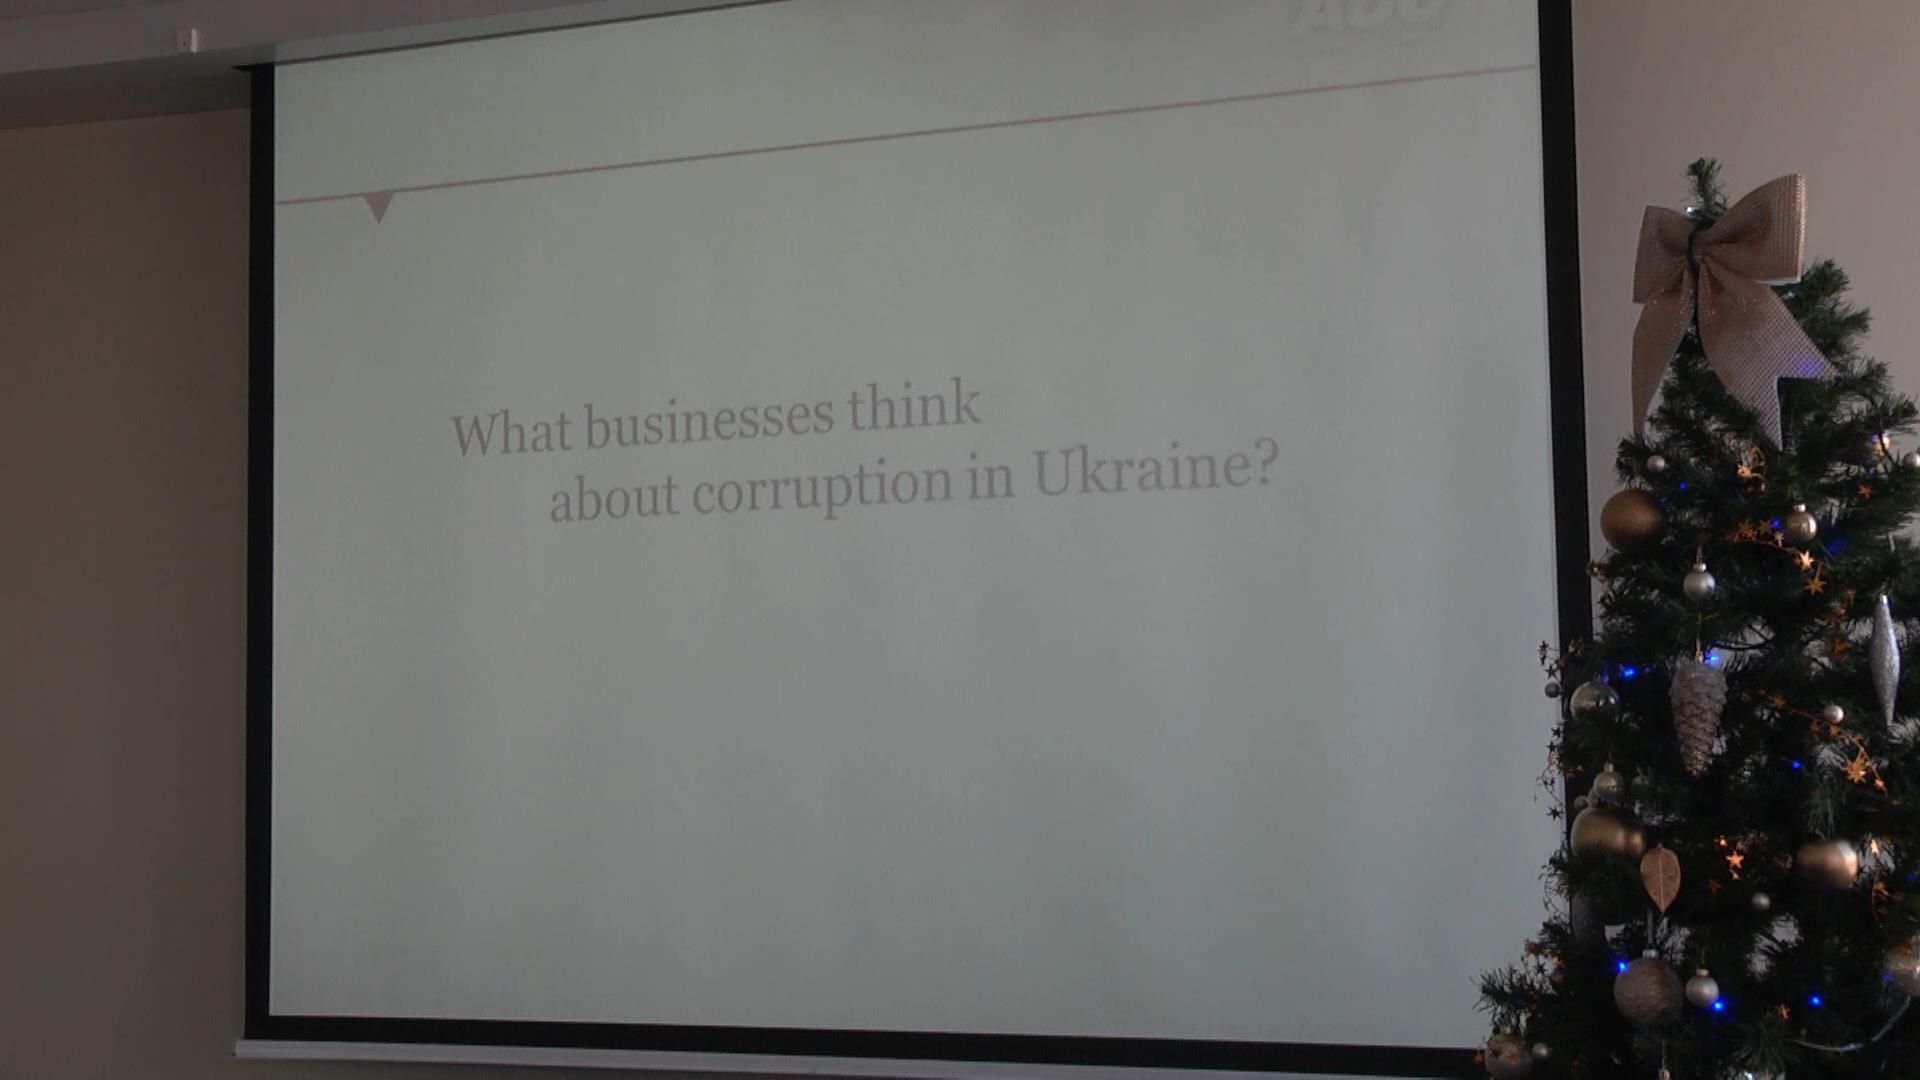 Кого американские бизнесмены считают наиболее коррумпированными в Украине